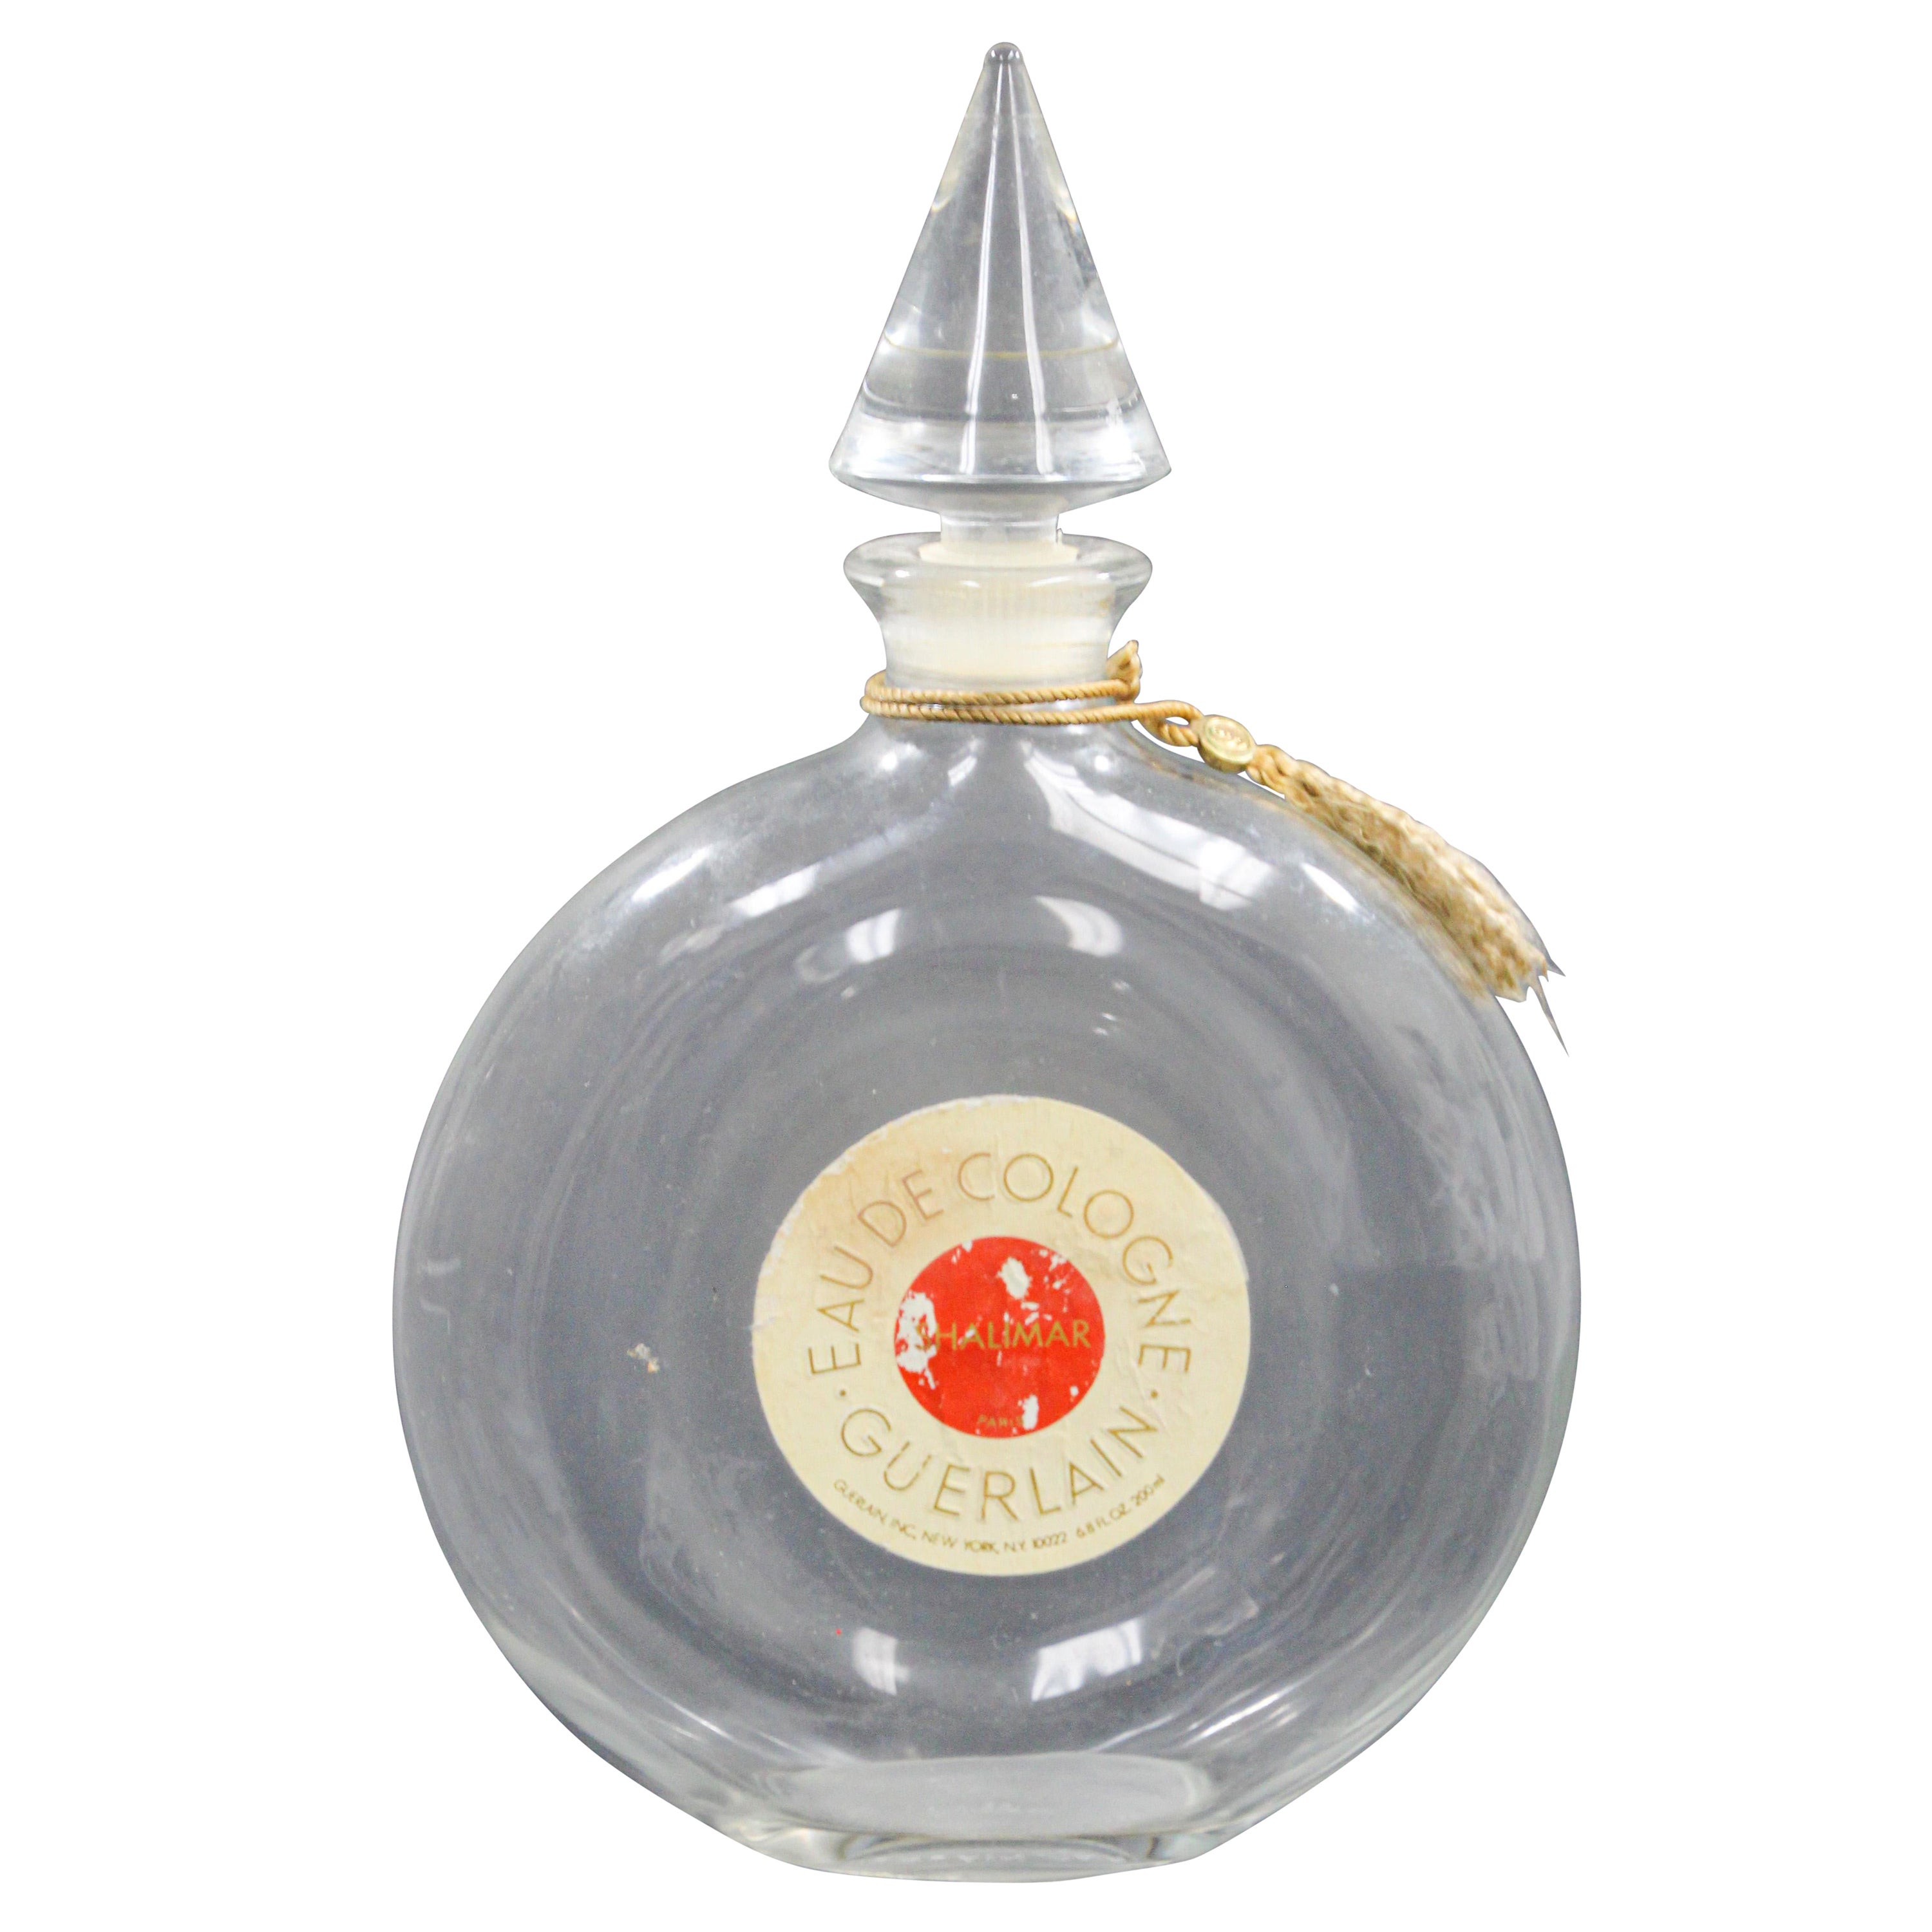 Bouteille de parfum Cologne vintage de Guerlain Shalimar, pièce de collection